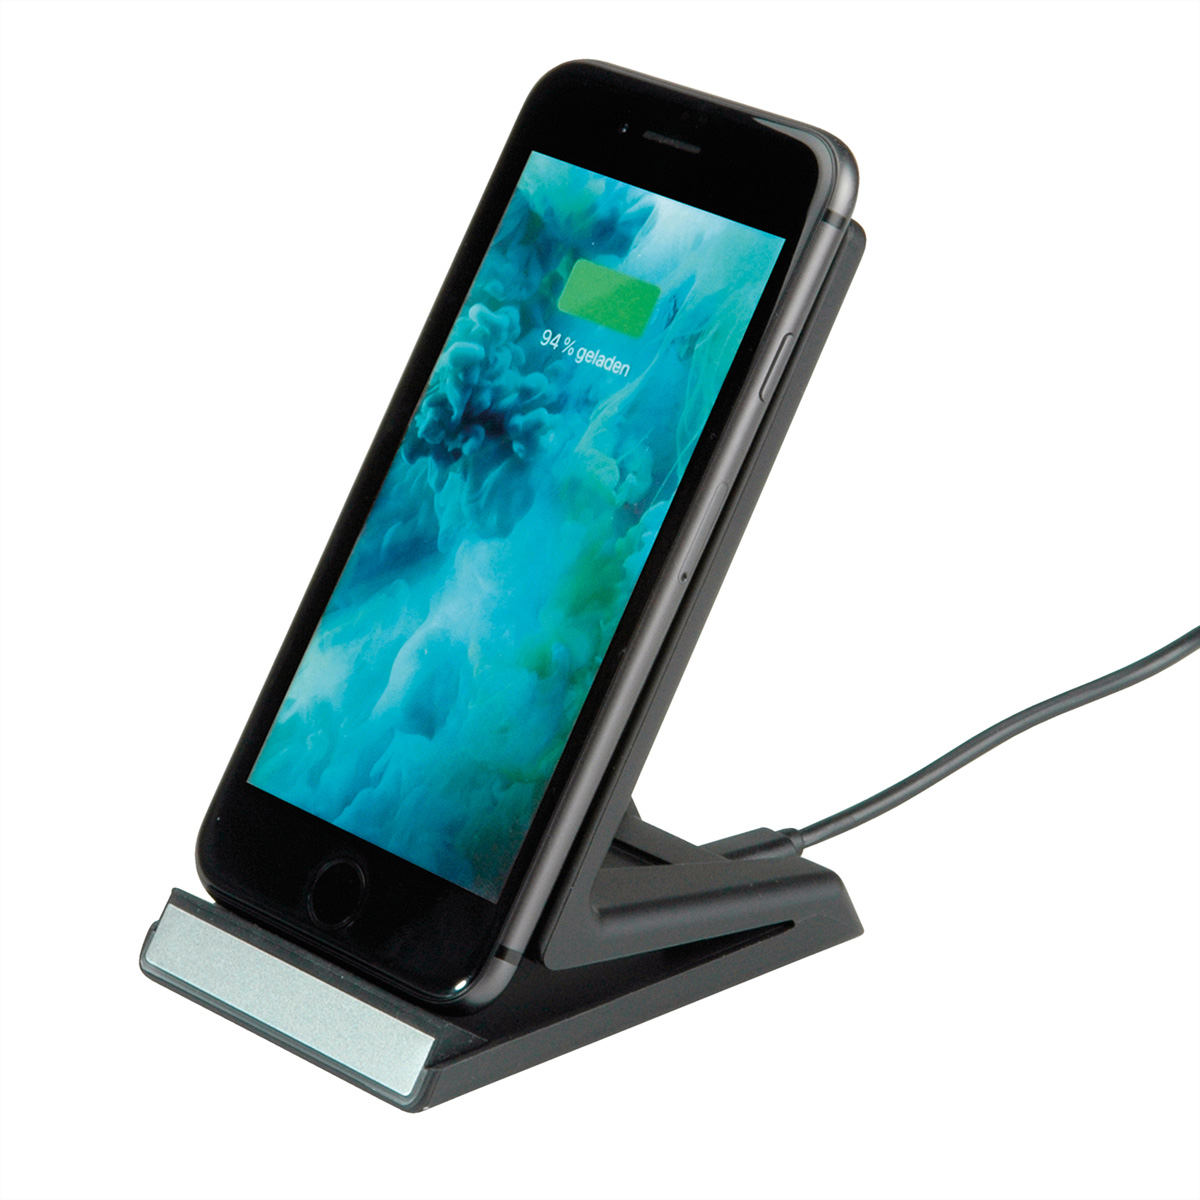 ROLINE Wireless Charging Ständer für 10W schwarz Ladestation Mobilgeräte